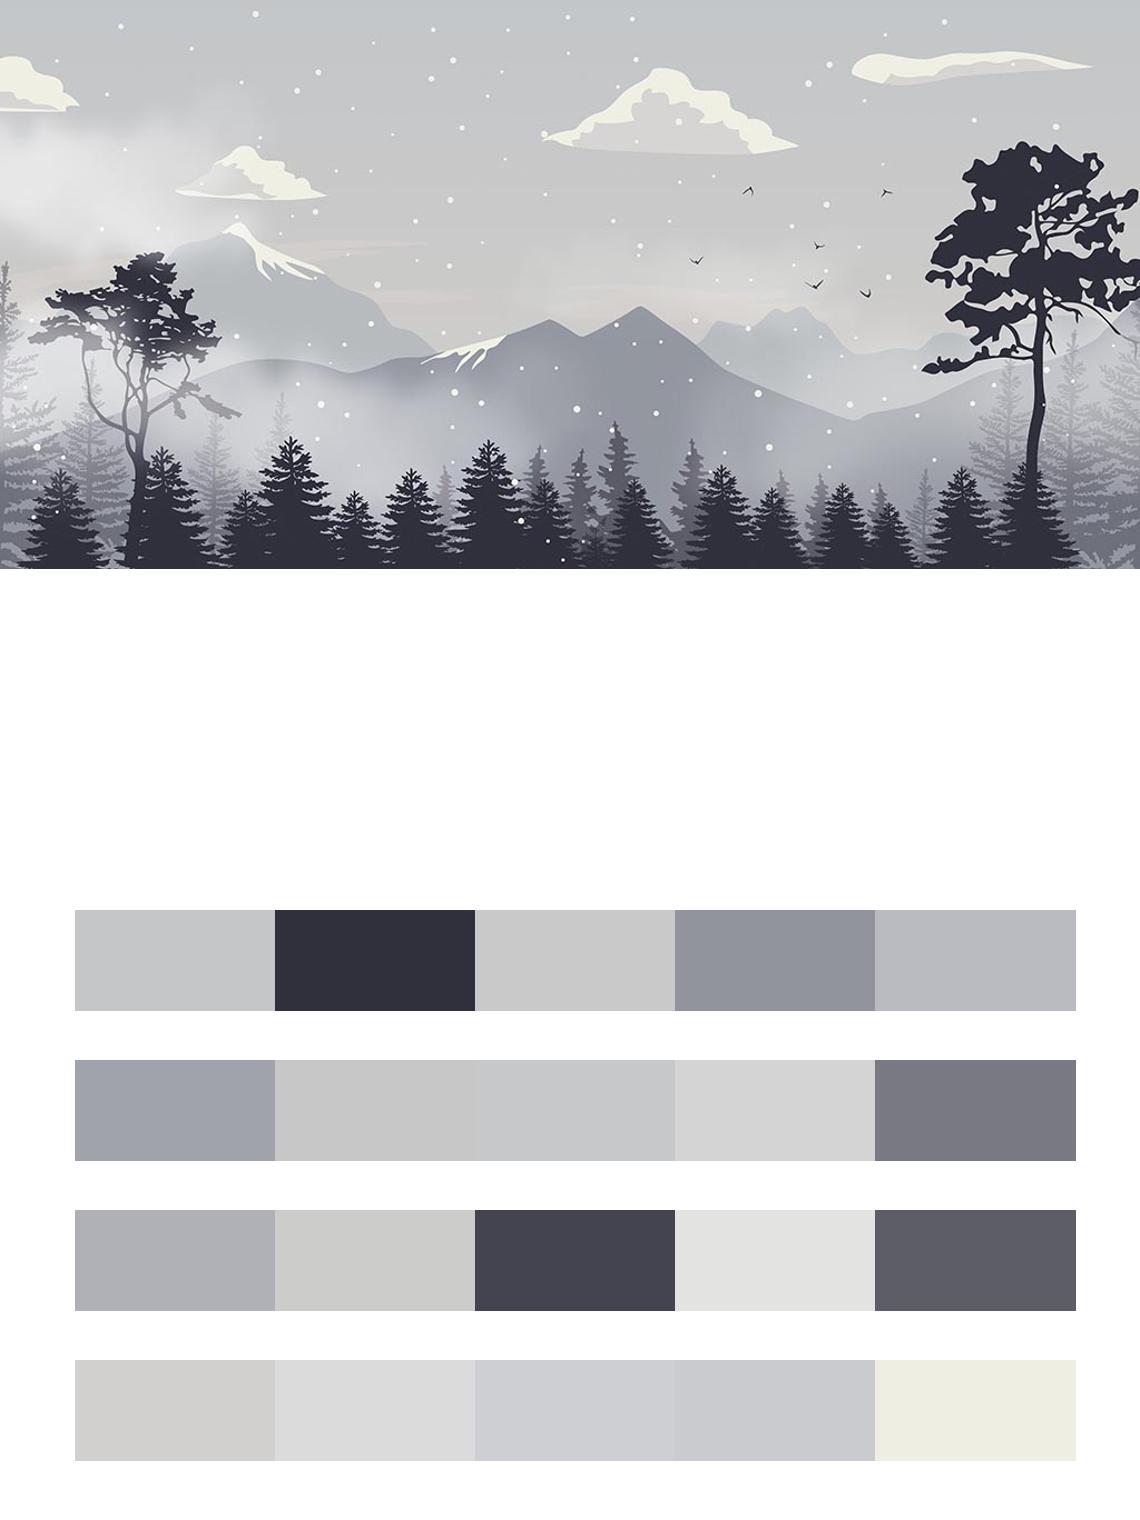 Горы в тумане за лесом цвета